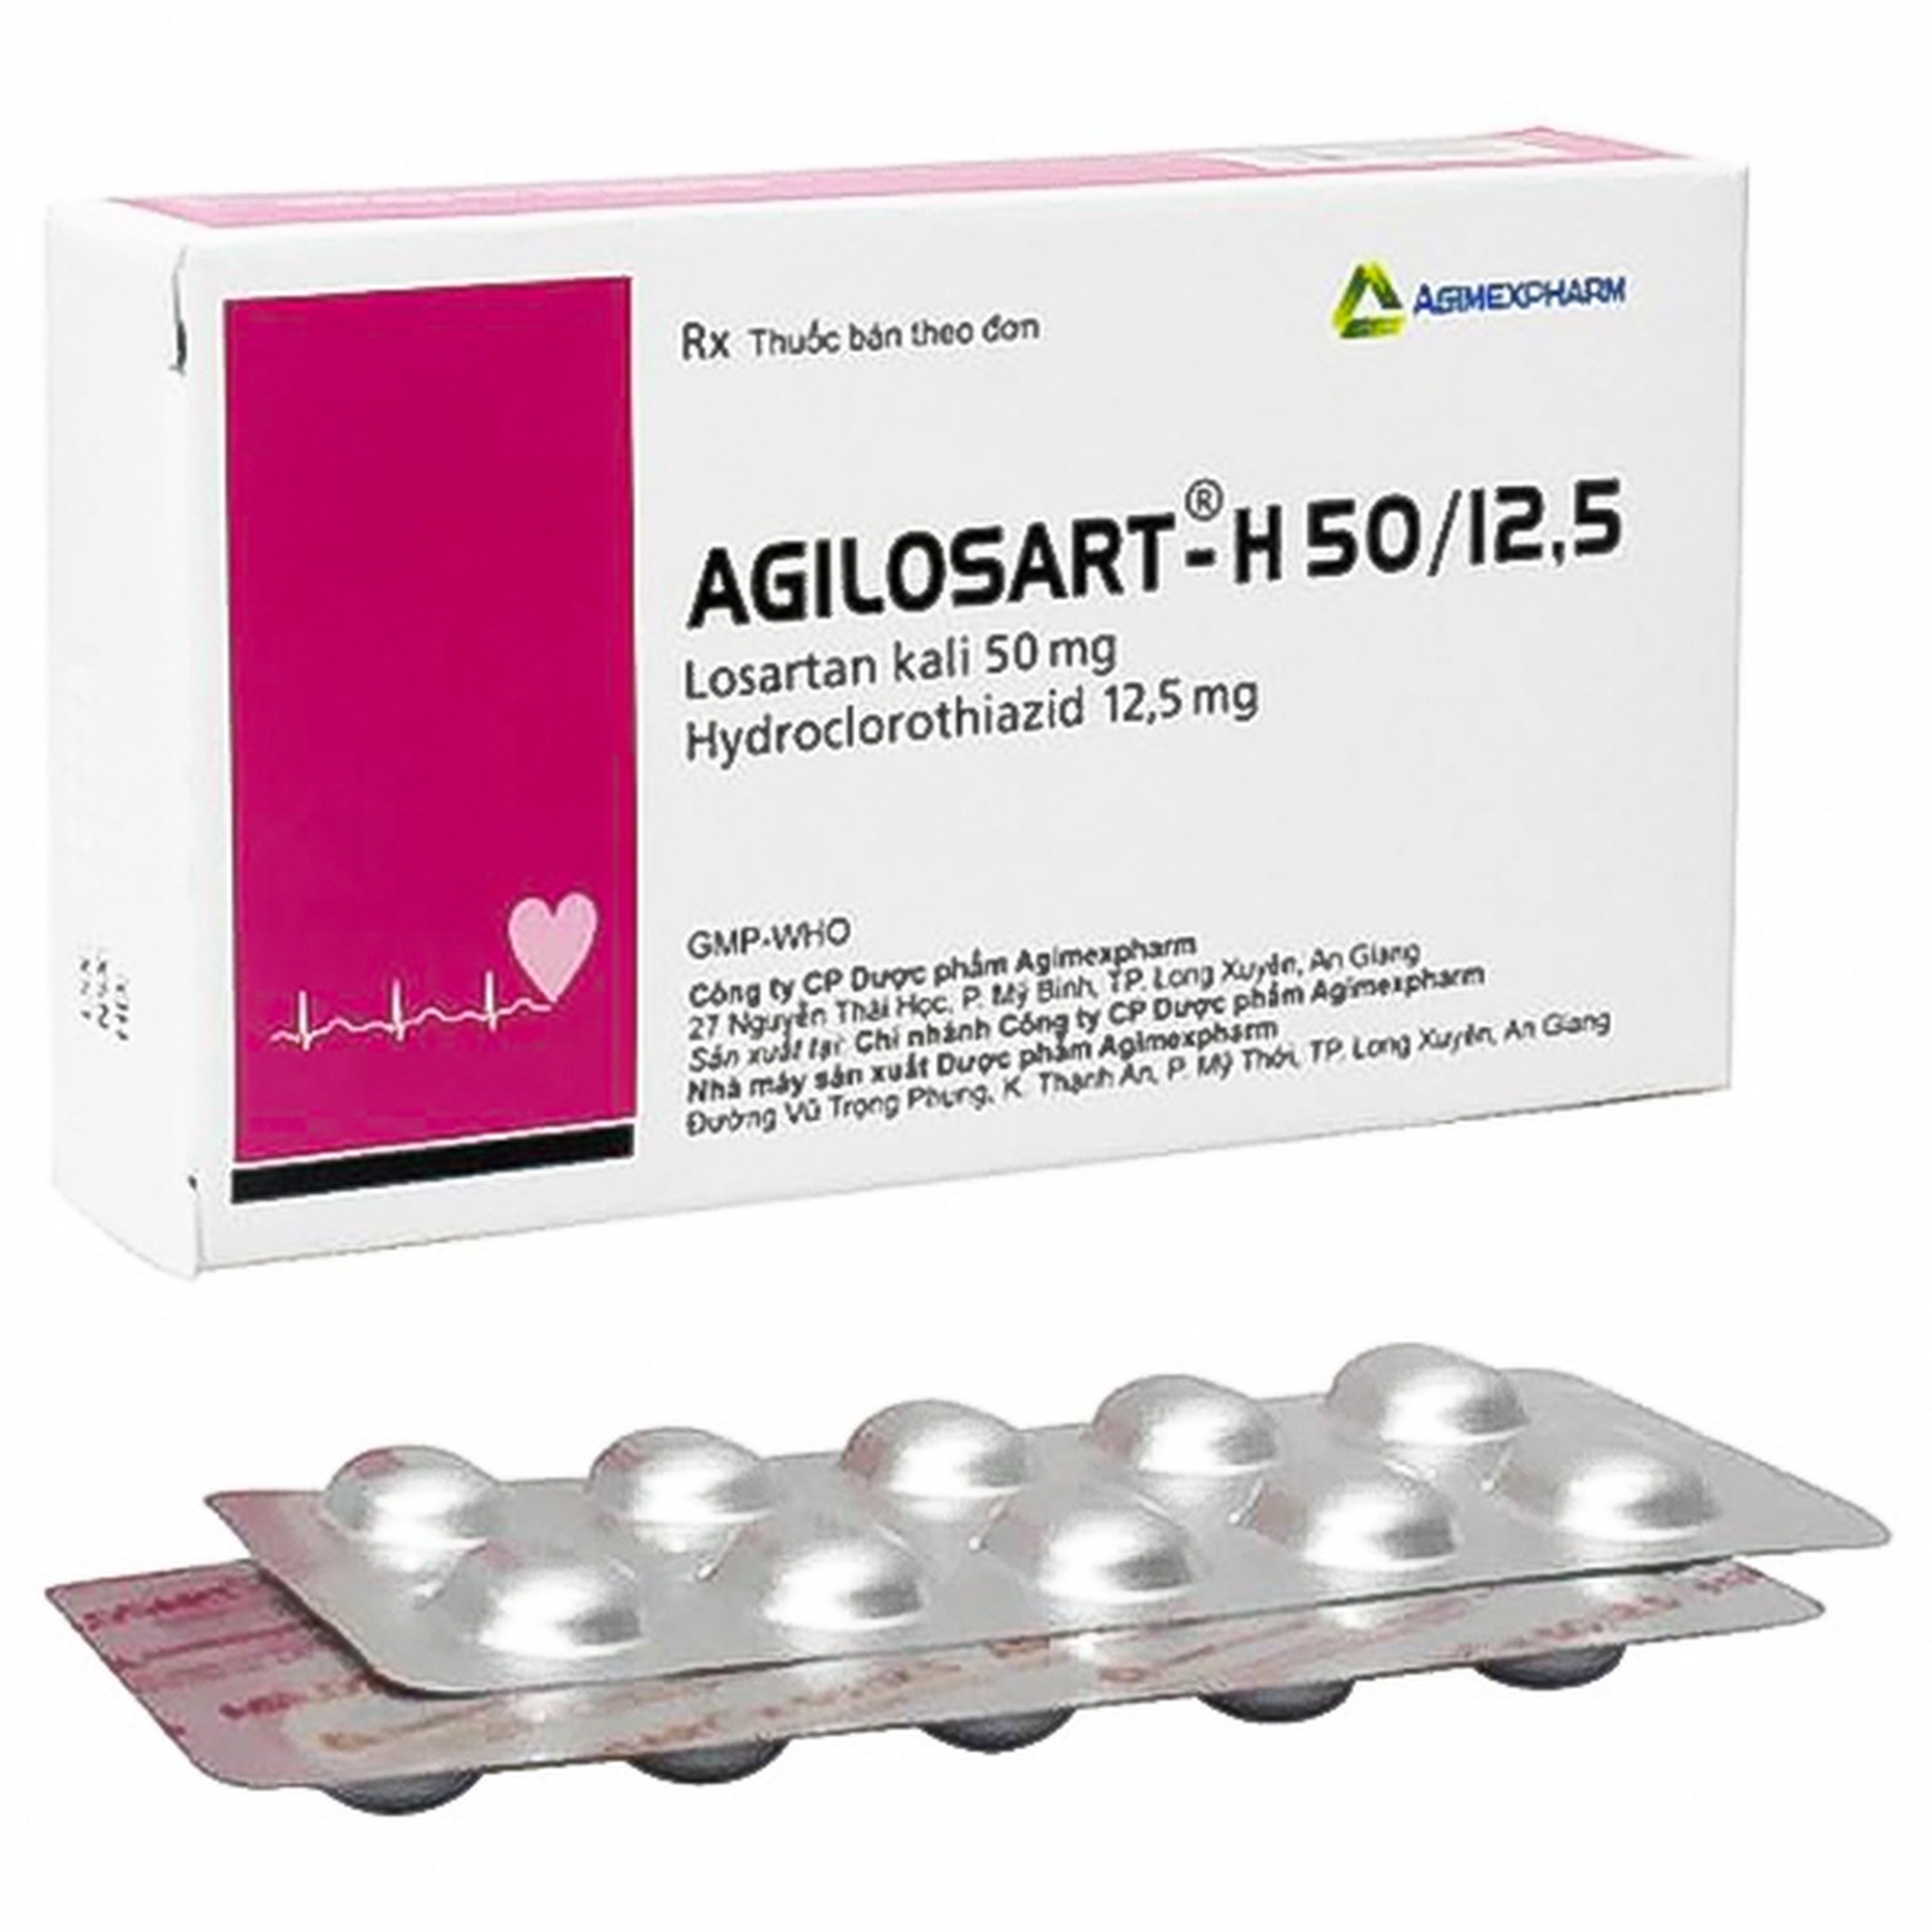 Thuốc Agilosart-H 50/12.5 Agimexpharm điều trị tăng huyết áp (3 vỉ x 10 viên)